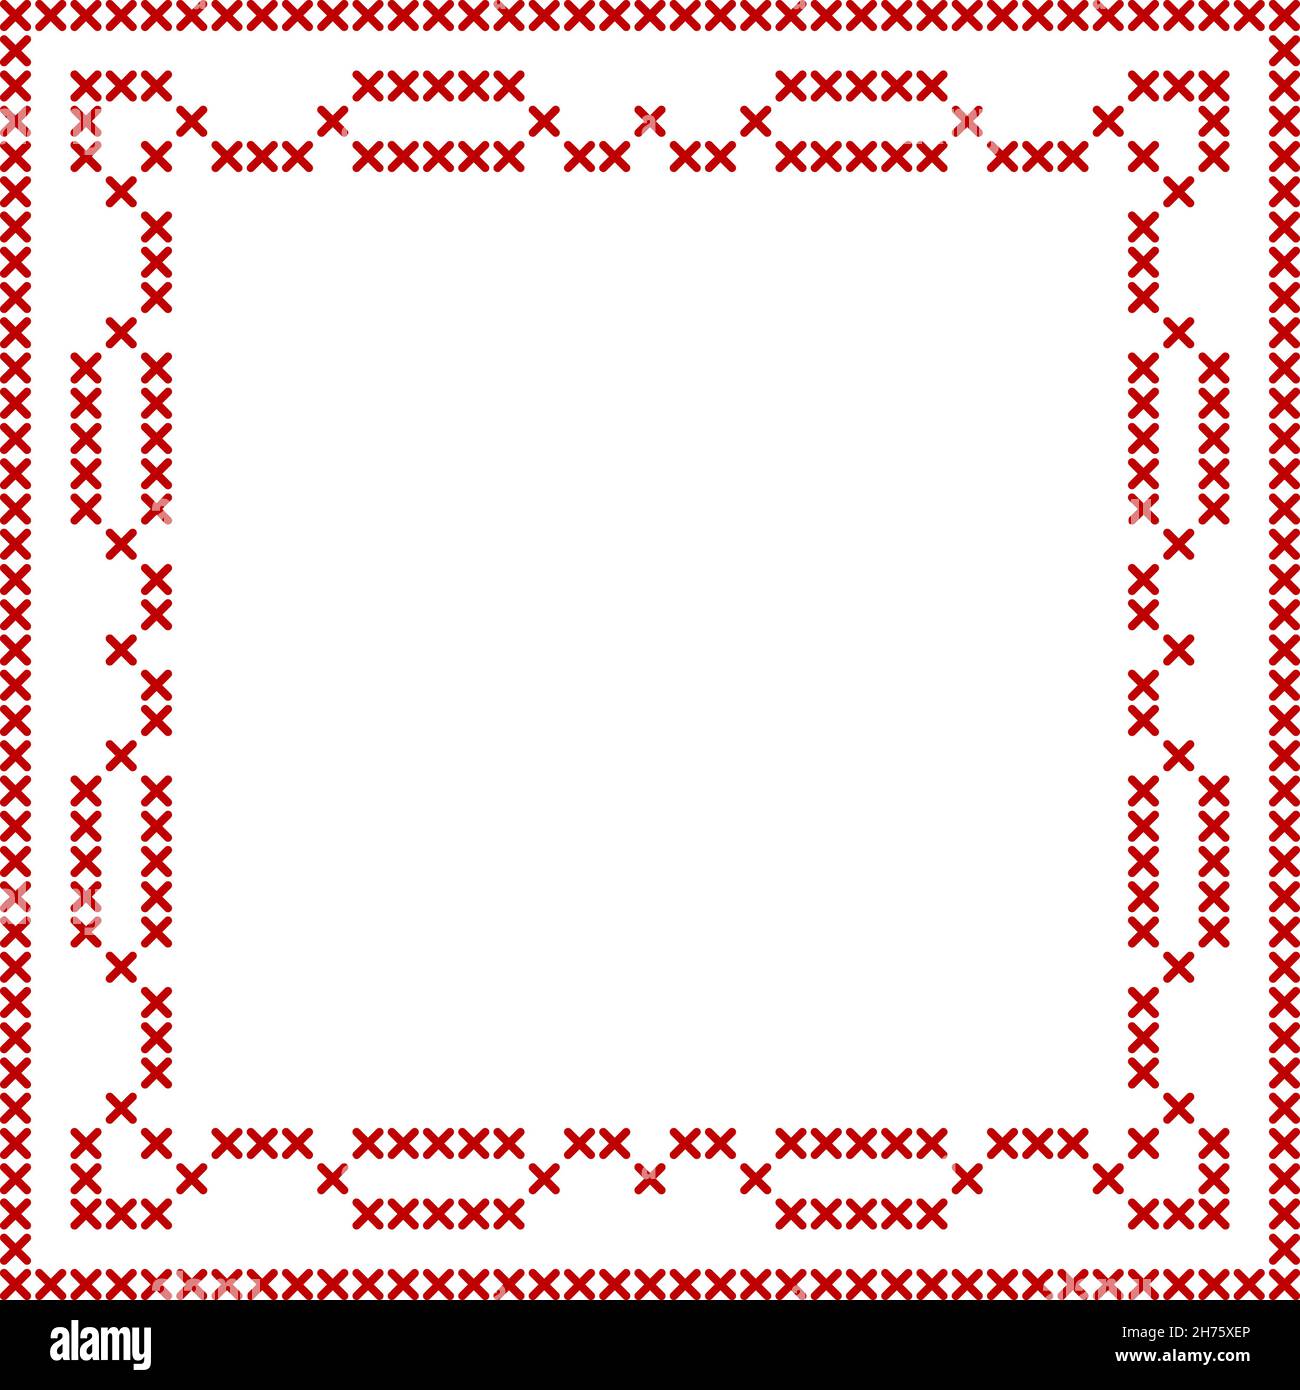 Bordure à point de croix, motif carré, parfait pour le motif de bannière de  Noël.Décoration géométrique rouge pour motif de broderie de  serviette.VVecto Image Vectorielle Stock - Alamy